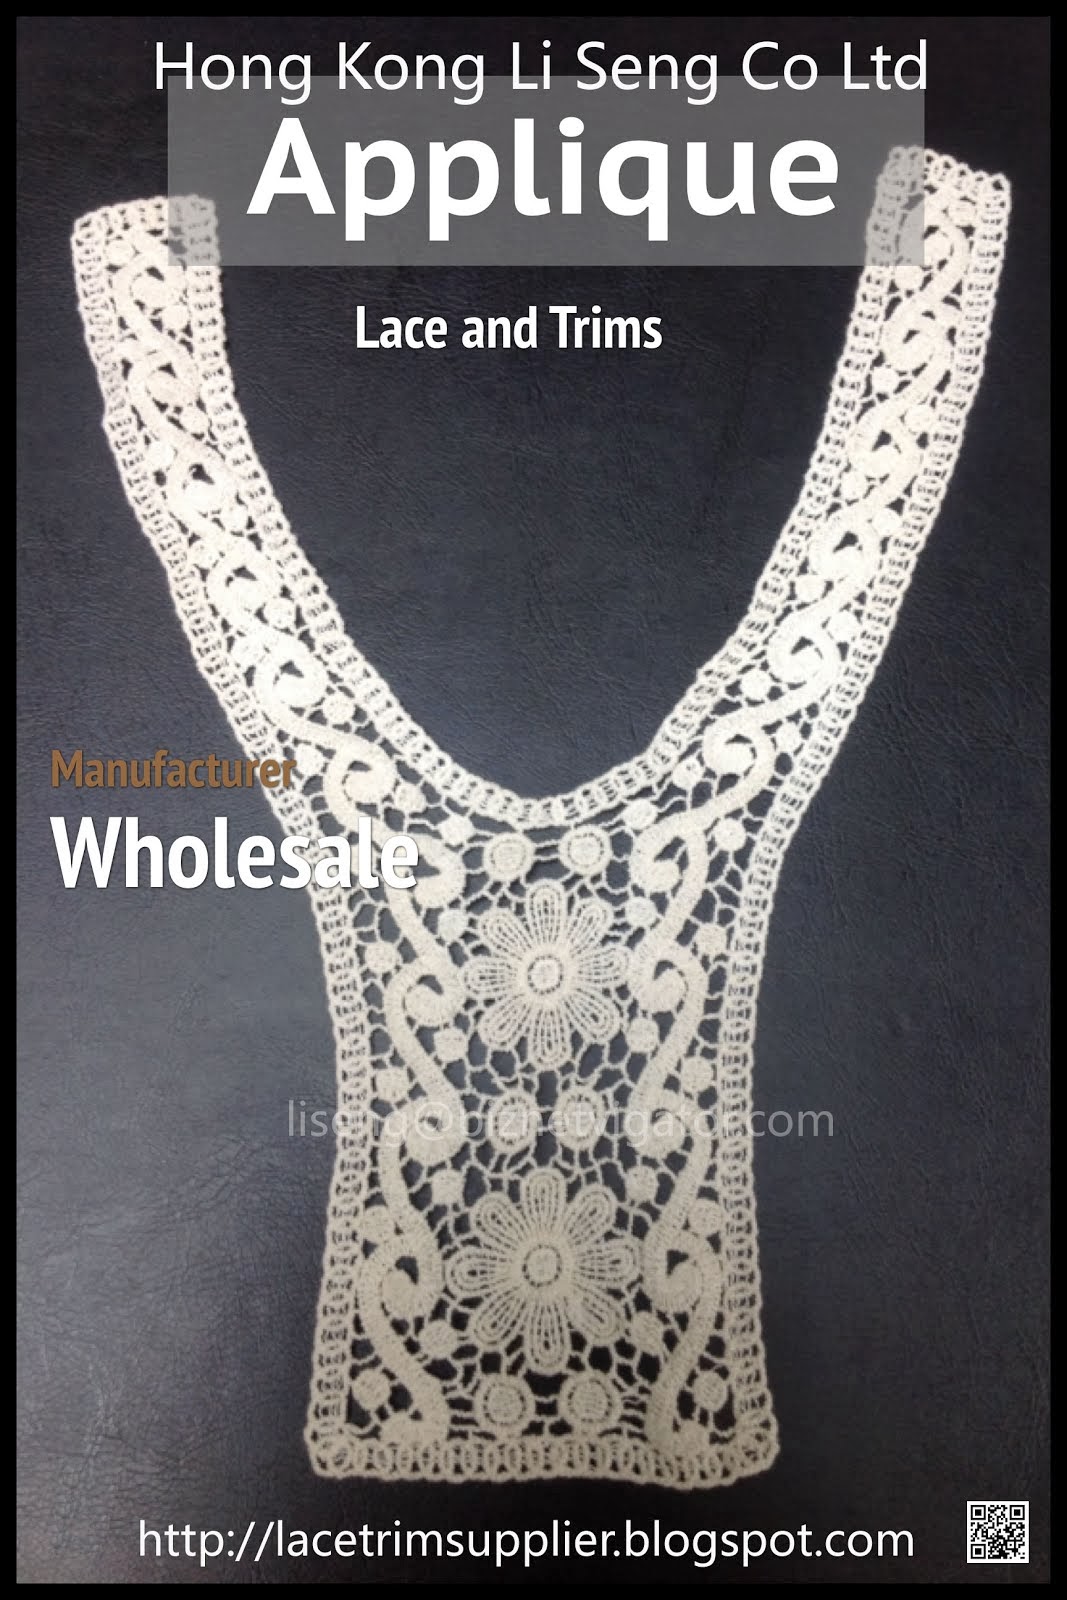 Lace and Trims Supplier Wholesale Manufacturer - Hong Kong Li Seng Co Ltd